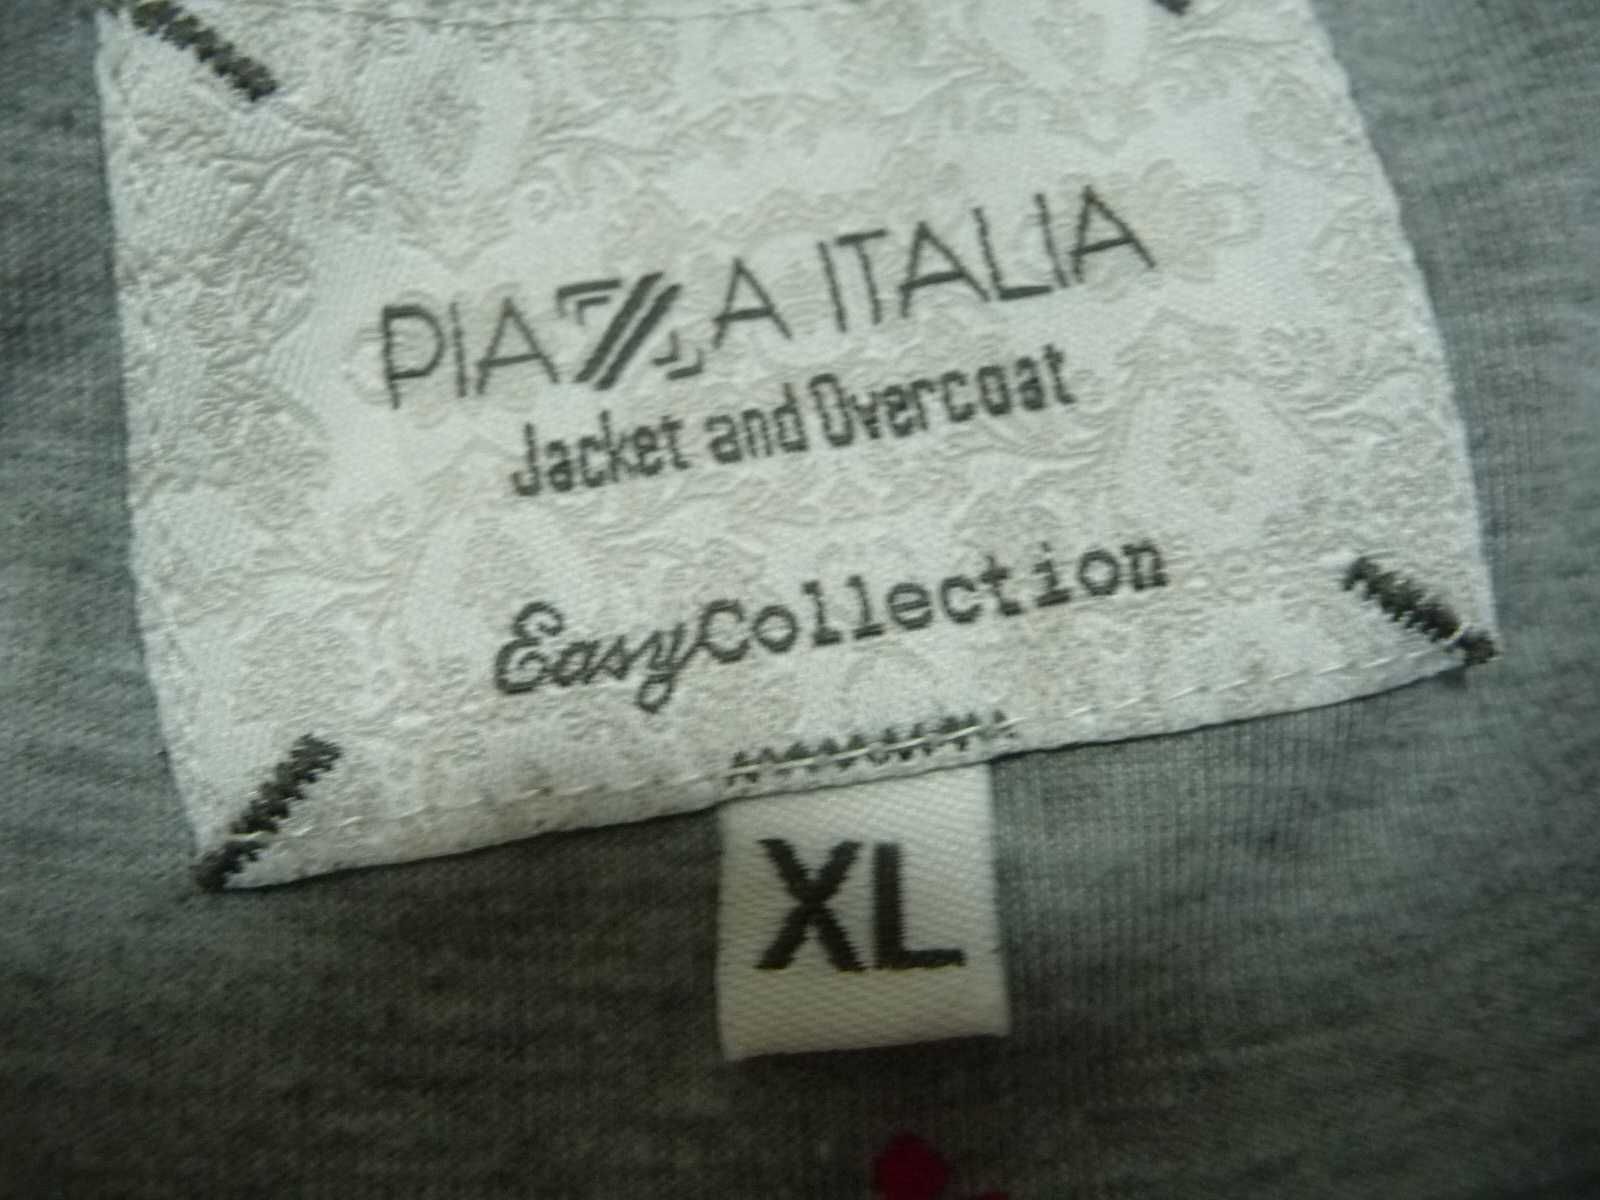 Куртка-ветровка-дождевик "Plaza Italia" унисекс : девушке, парню.